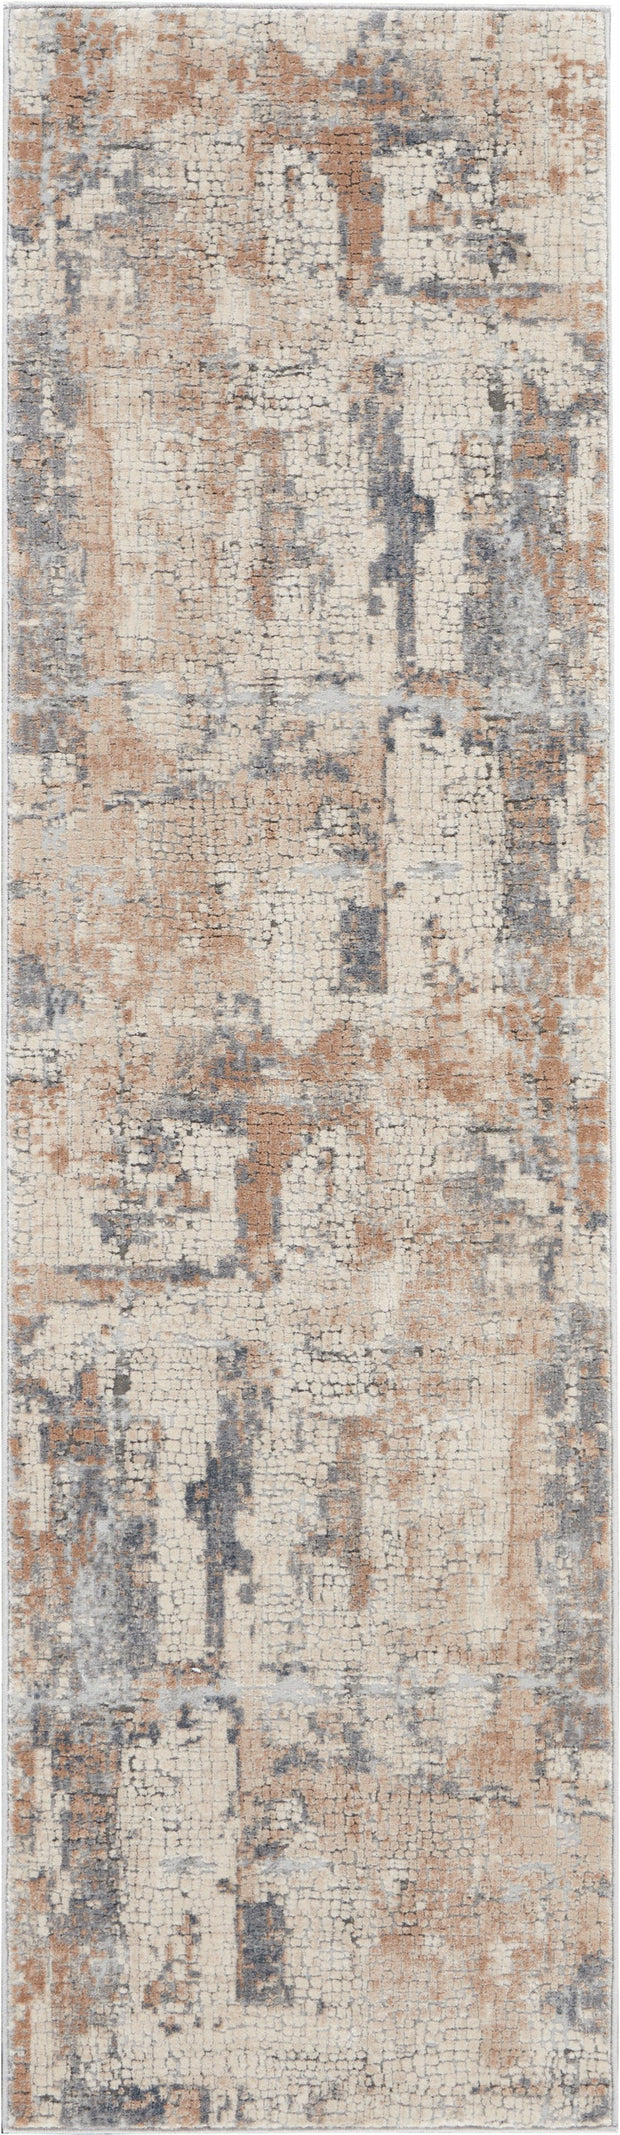 rustic textures beige grey rug by nourison 99446462169 redo 3